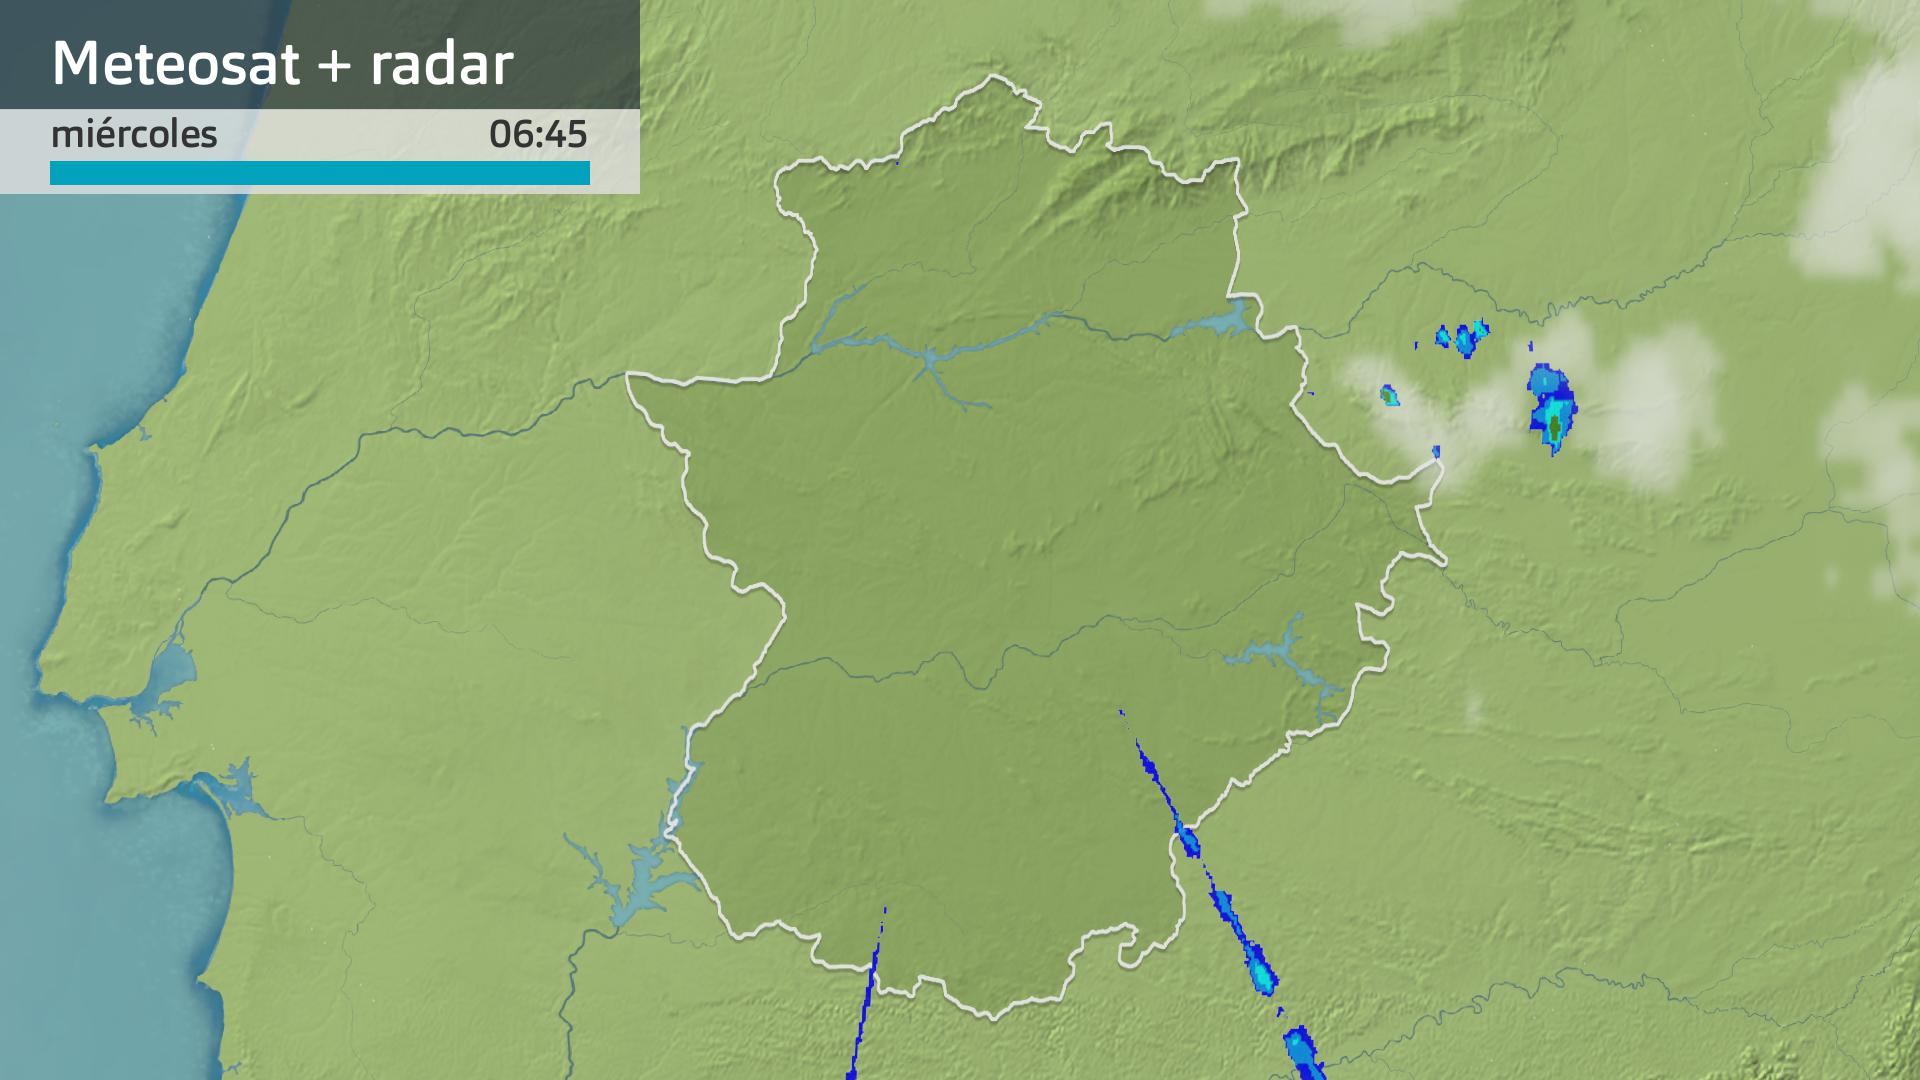 Imagen del Meteosat + radar meteorológico miércoles 12 de junio 6:45 h.